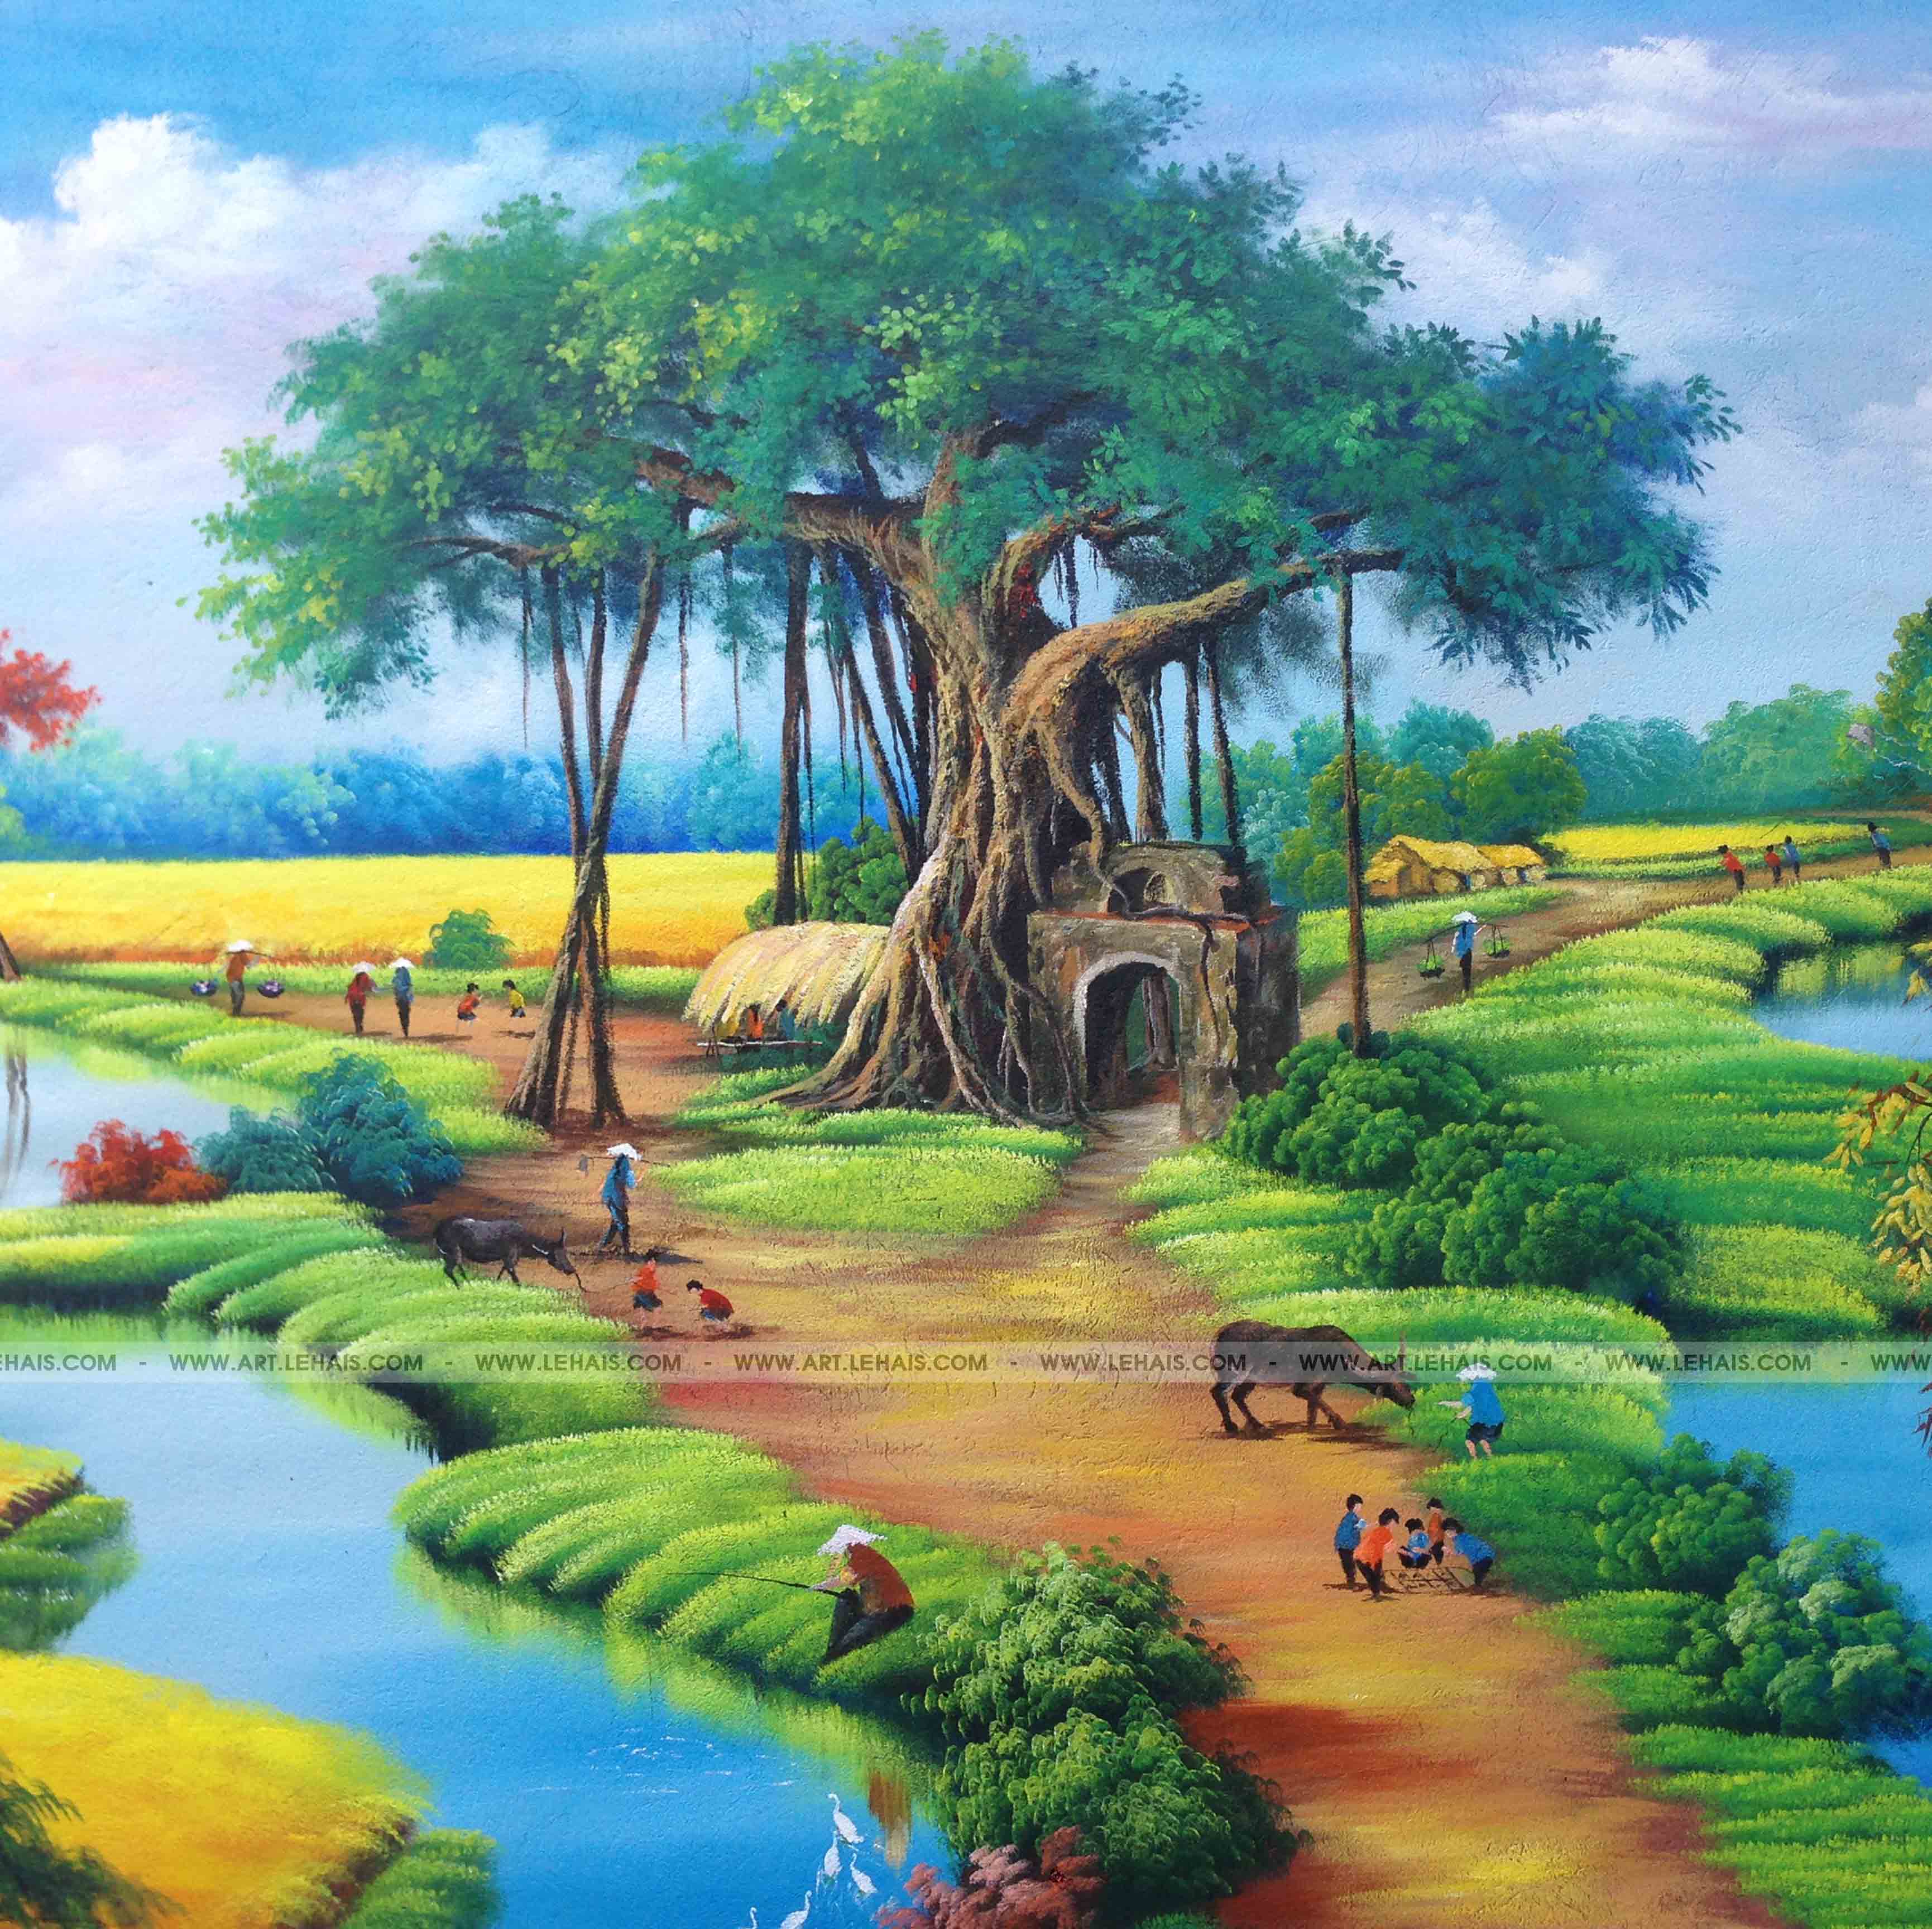 Vẽ tranh phong cảnh làng quê tại Tề Lỗ, Vĩnh Tường, Vĩnh Phúc - TT117LHAR